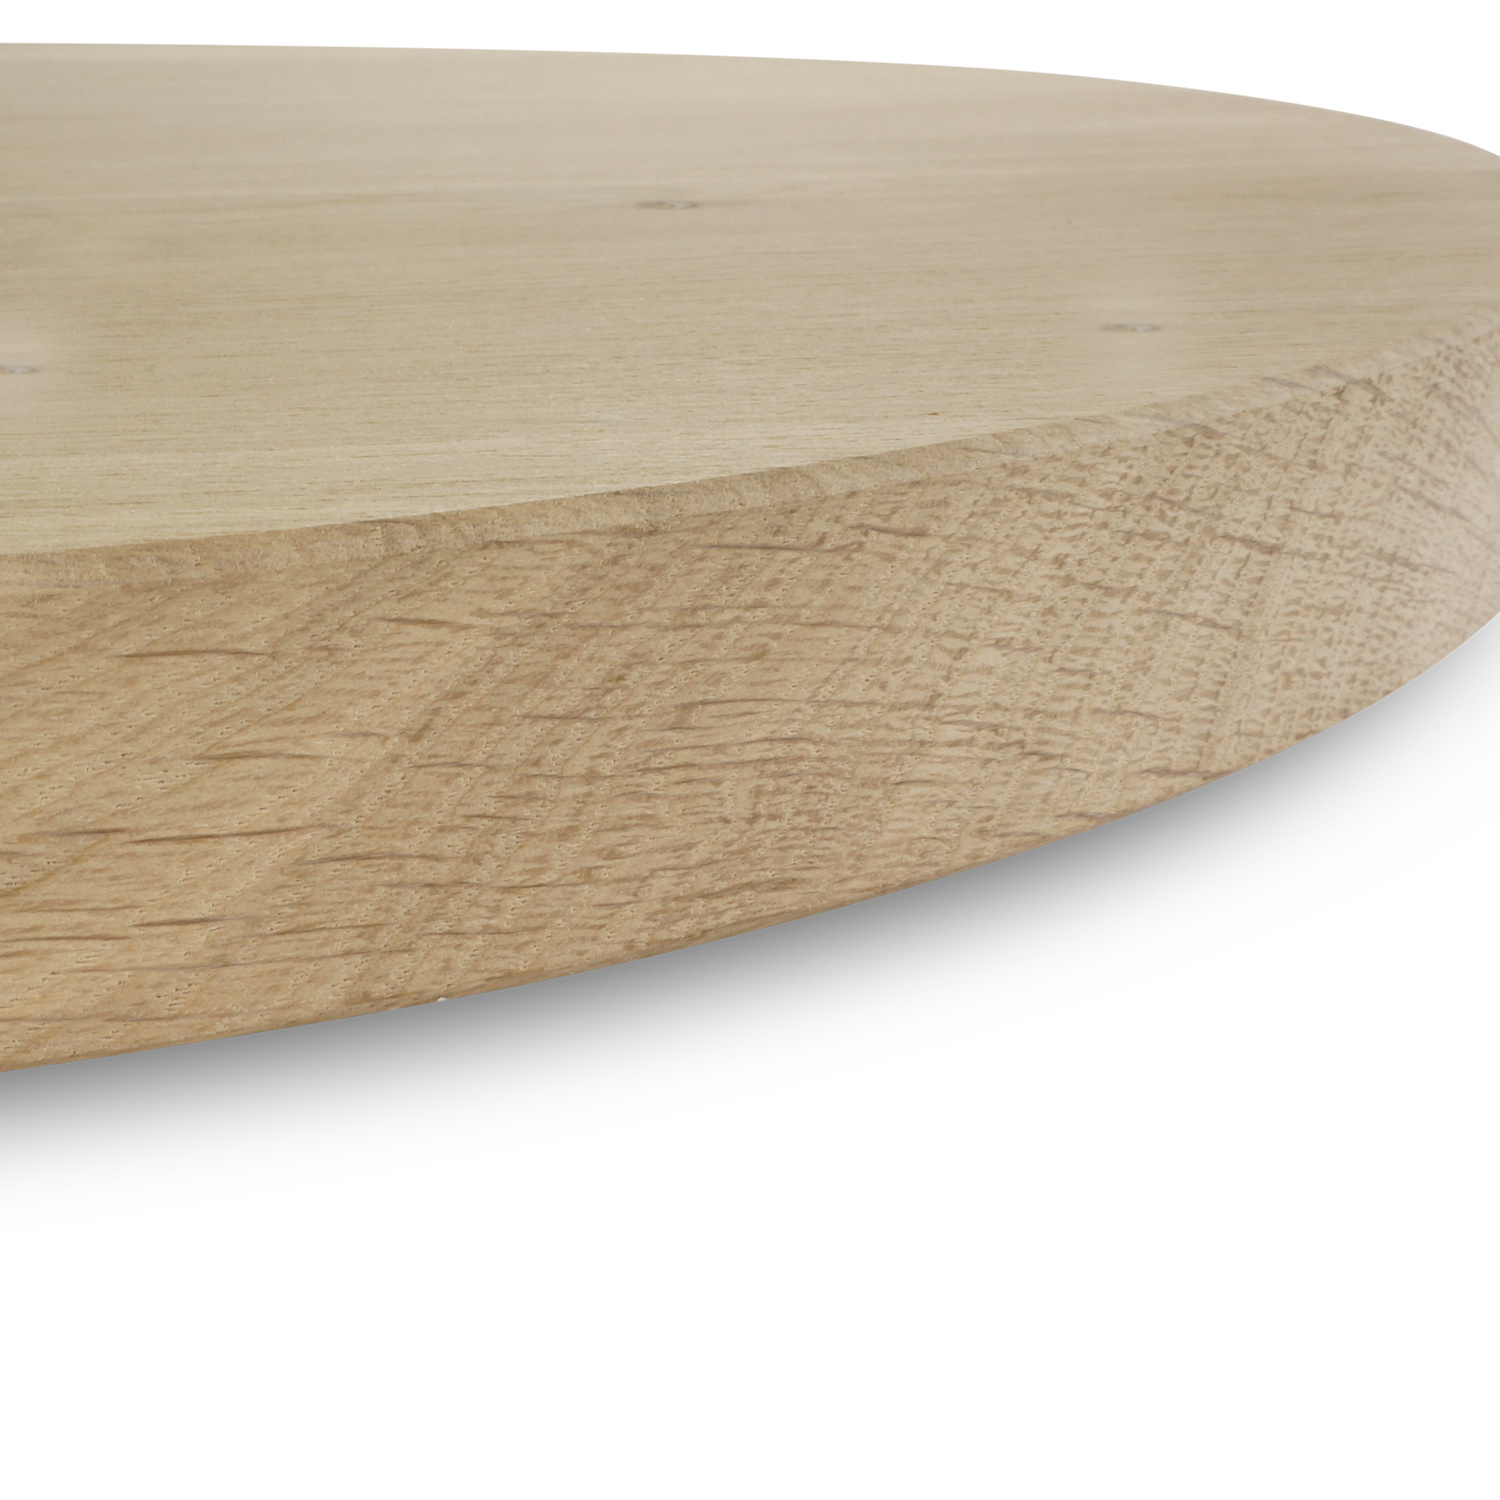  Rond eiken tafelblad op maat - 4 cm dik (1-laag) - rustiek Europees eikenhout - met brede lamellen (circa 10-12 cm)nhout - verlijmd kd 8-12% - diameter van 35 tot 117 cm